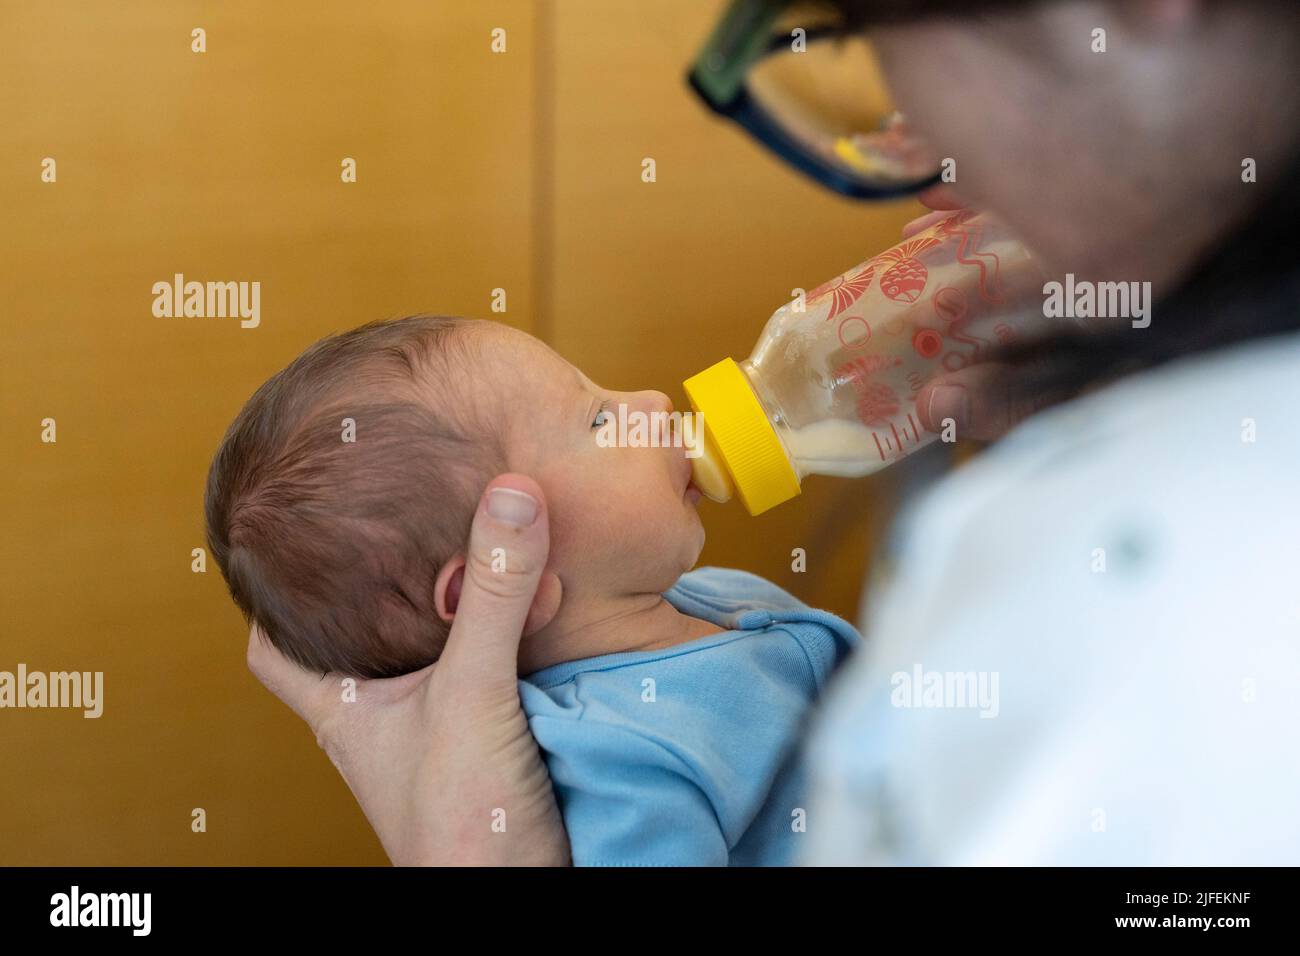 Mujer joven que alimenta a un bebé prematuro recién nacido con un biberón de lactancia Foto de stock